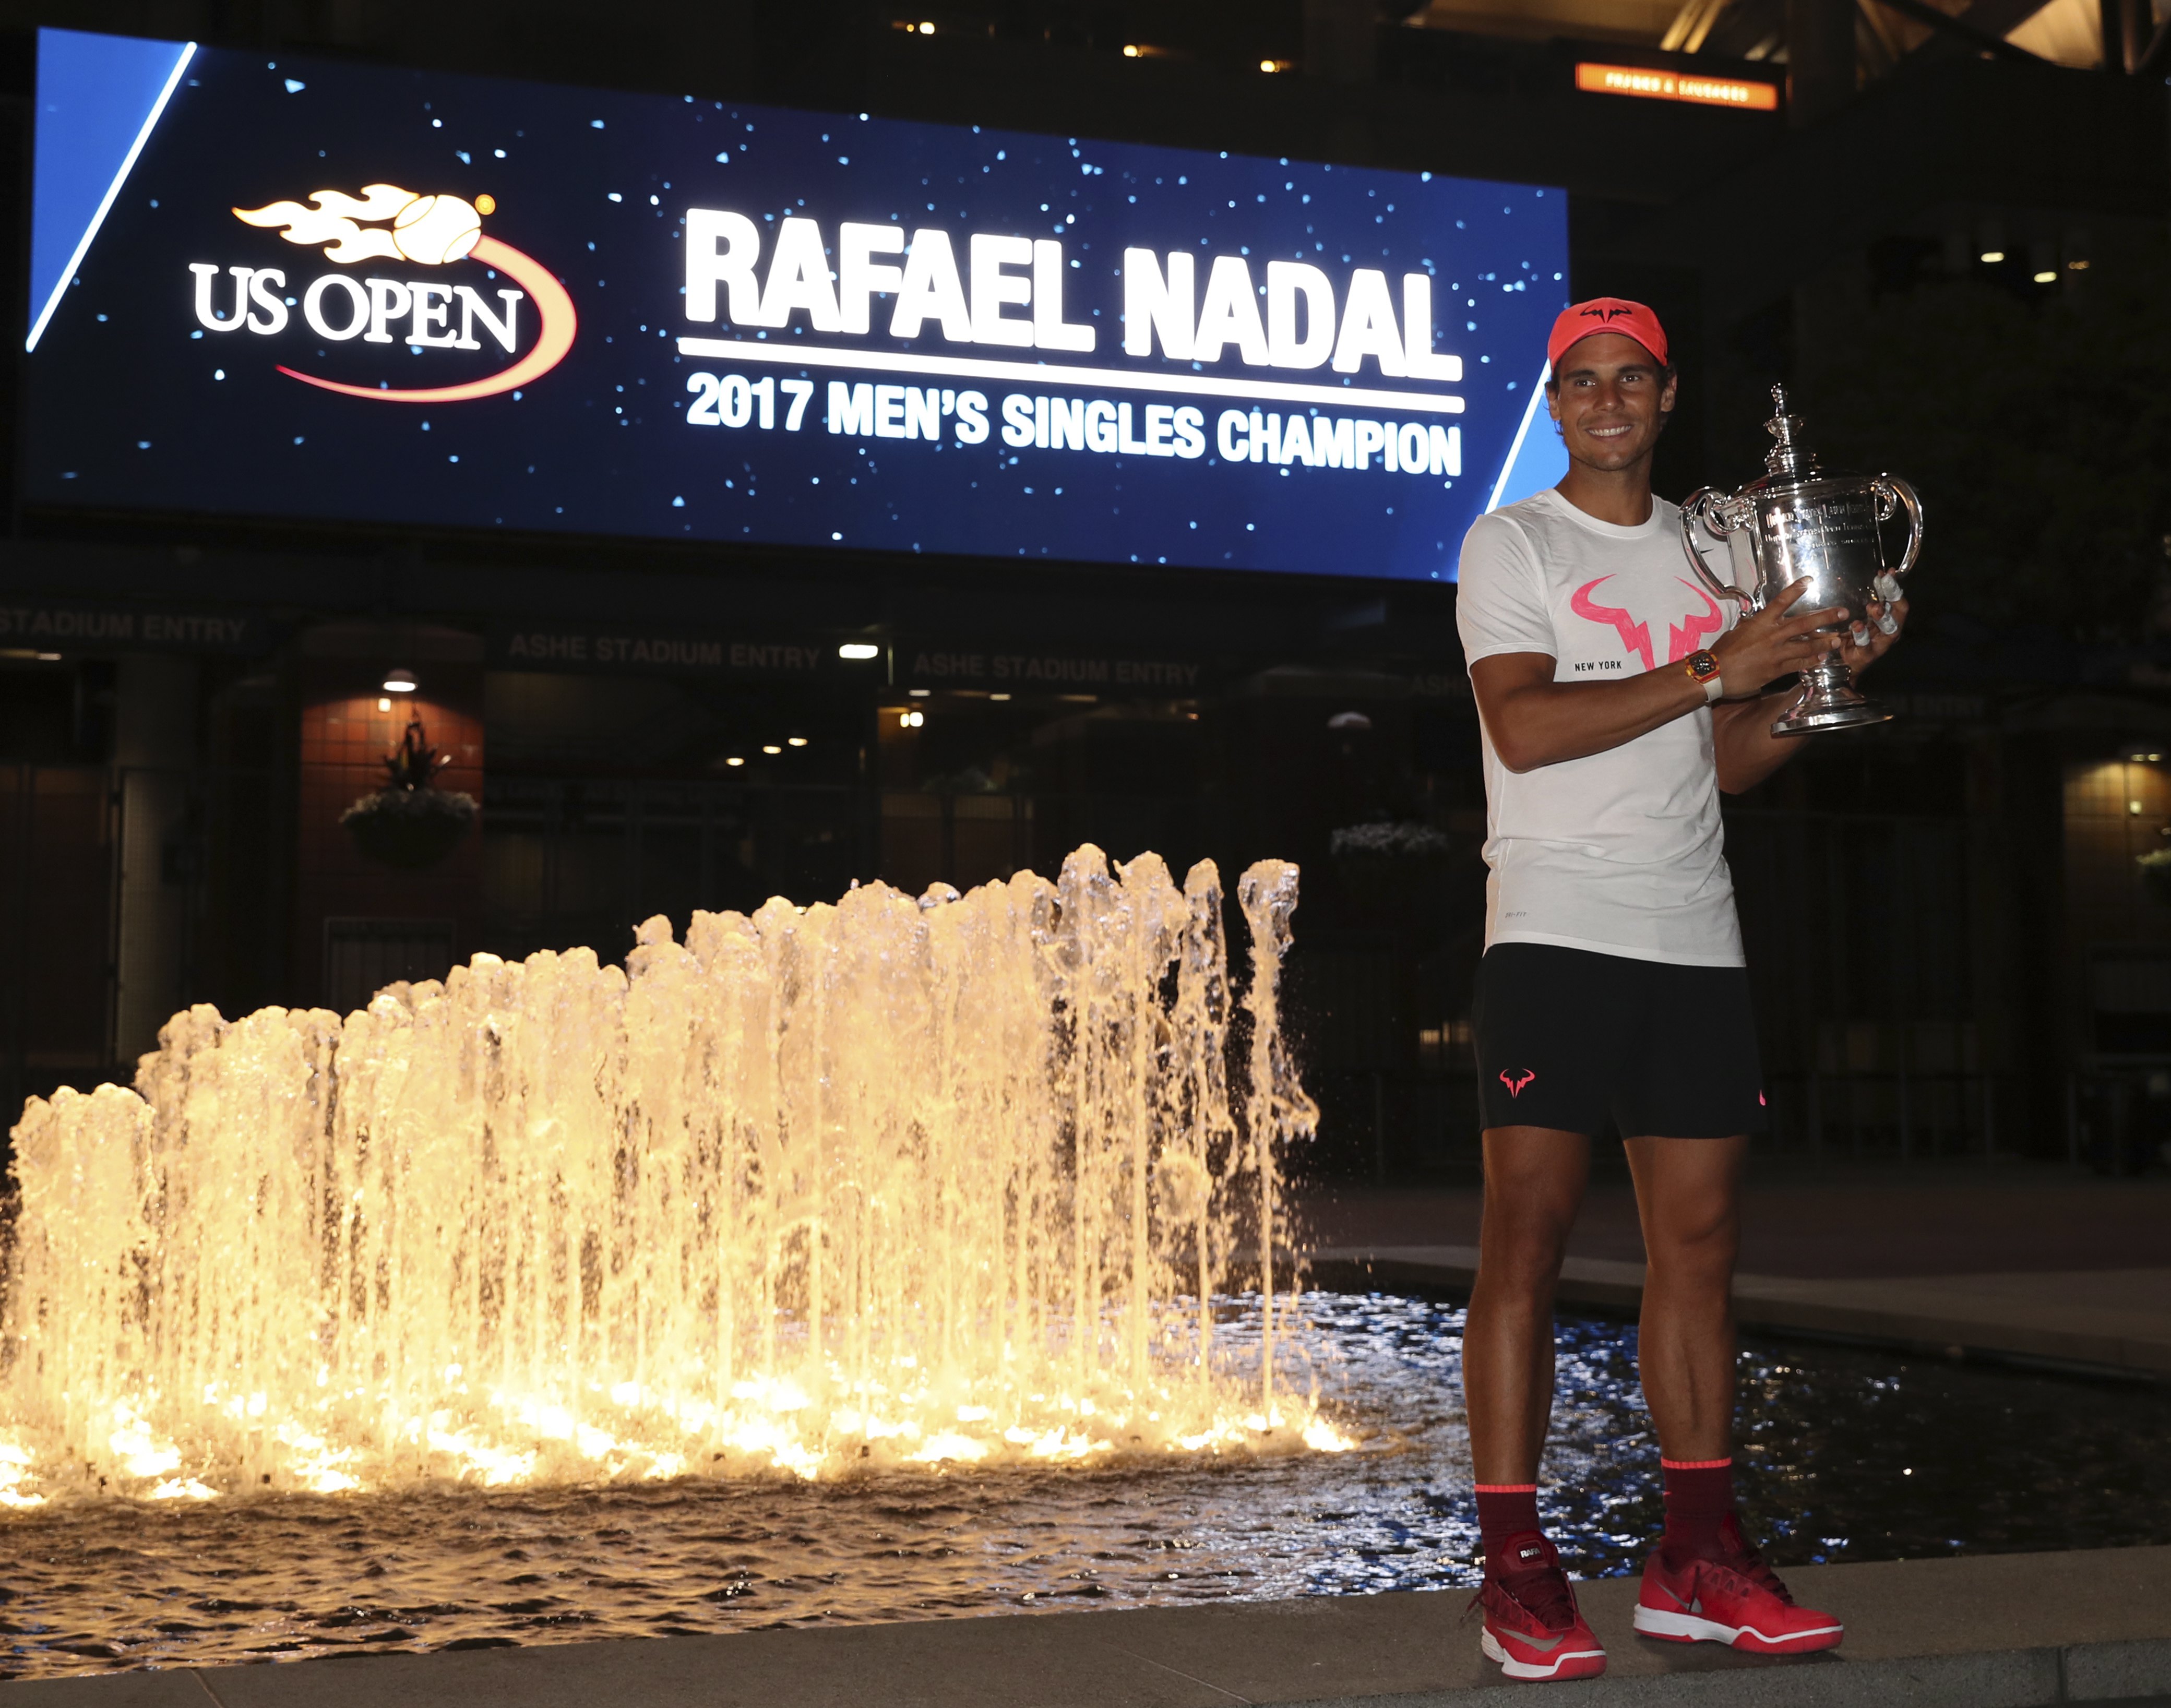 Ο Ναδάλ κατέκτησε το US Open και έφτασε τα 16 Γκραντ Σλαμ